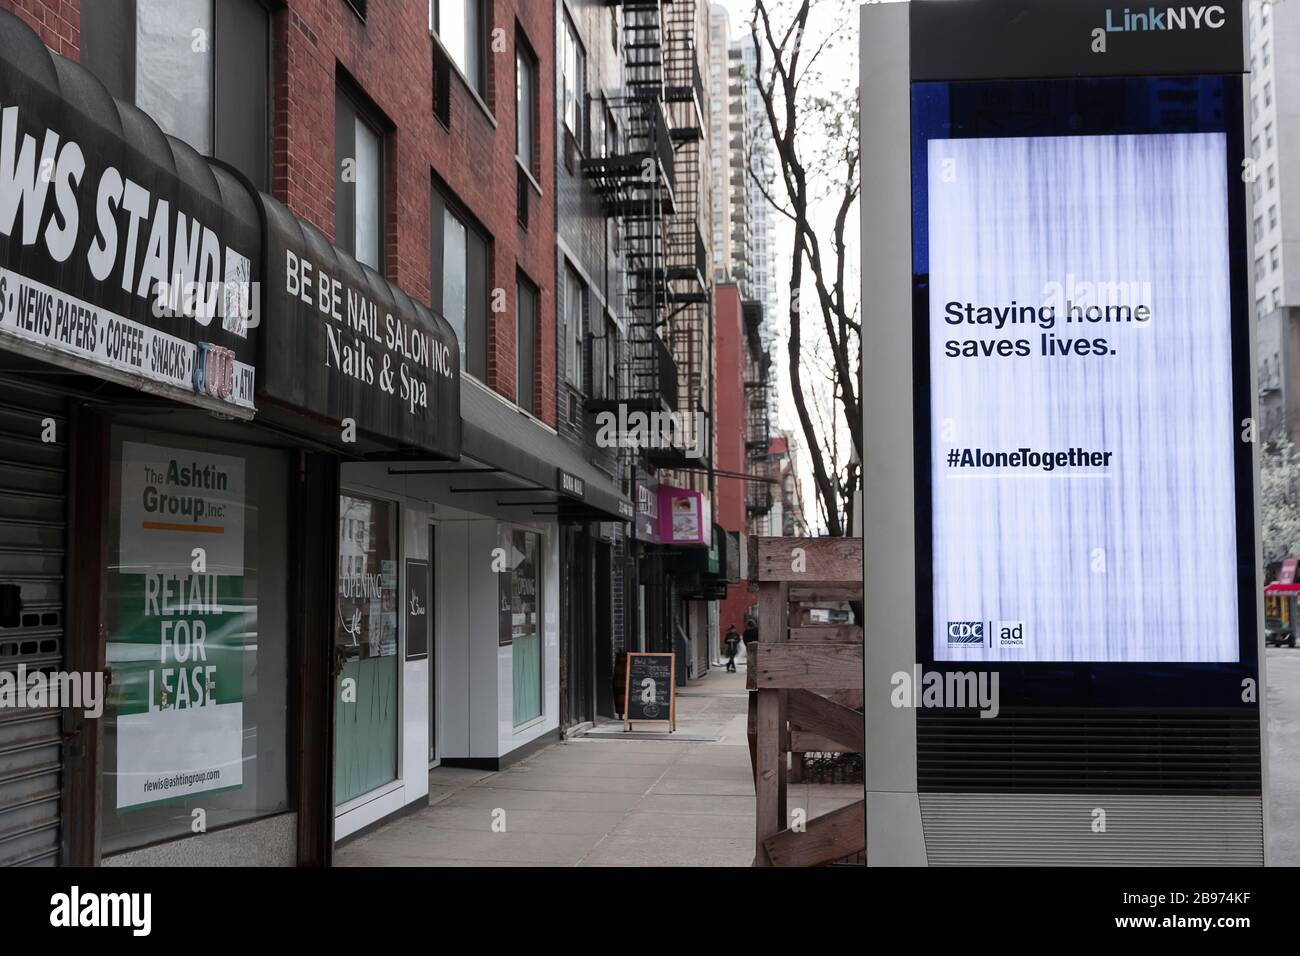 LinkNYC Schild mit digitalem Kiosk auf dem Gehweg, auf dem Covid-19 (Coronavirus) Quarantäne-Tipps und Ratschläge für New Yorker angezeigt werden. Stockfoto